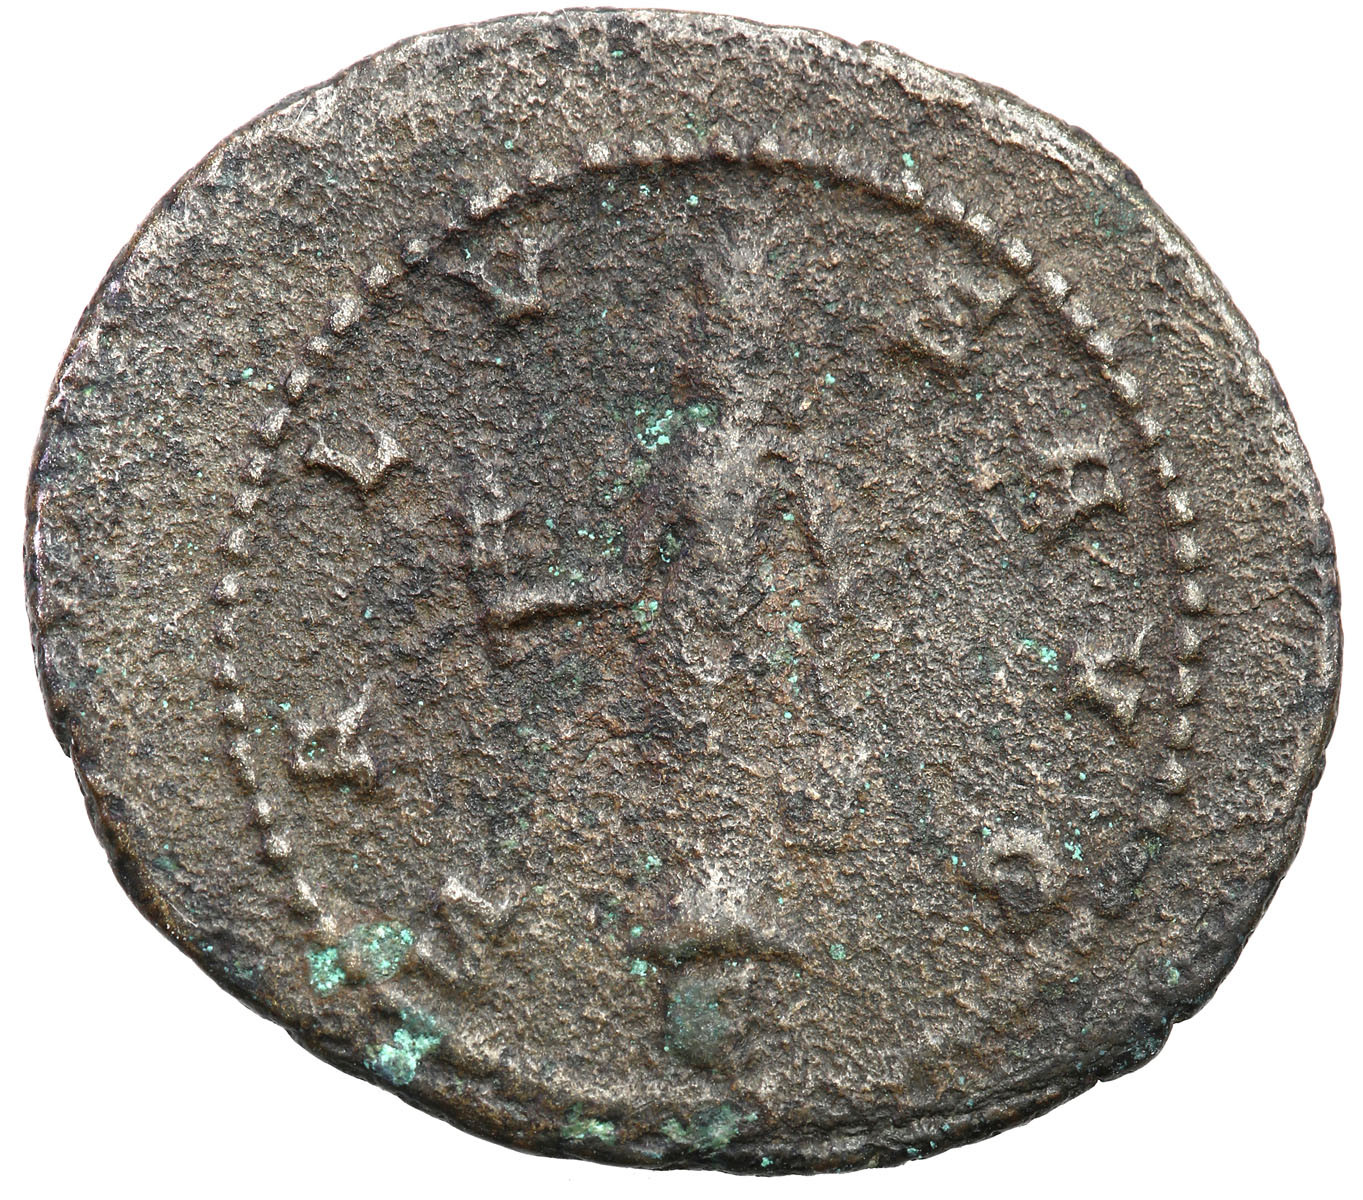 Cesarstwo Rzymskie, Antoninian Bilonowy, Klaudiusz II Gocki 268 - 270 n.e., Antiochia